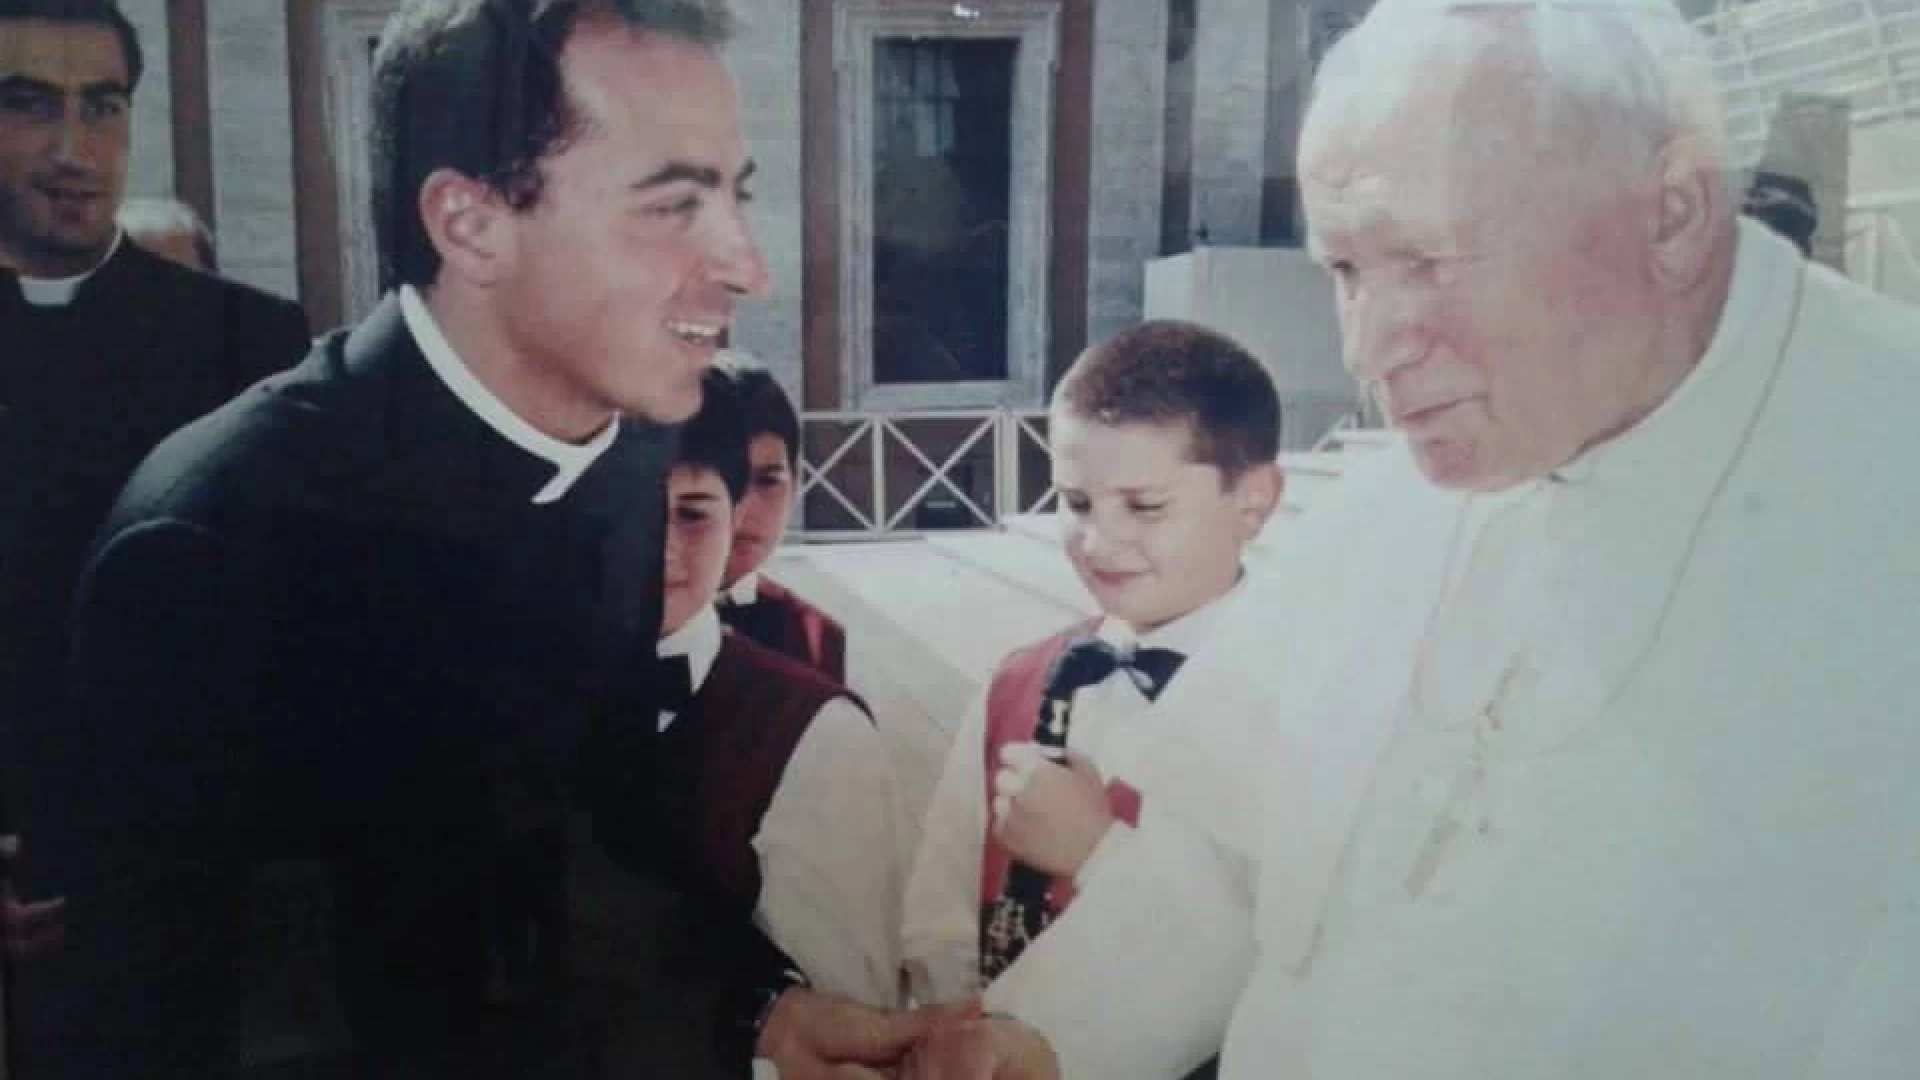 Violento incidente a Cassino. Sarno prega per Don Antonio Agovino. E’ stato anche parroco di Scapoli negli anni scorsi.